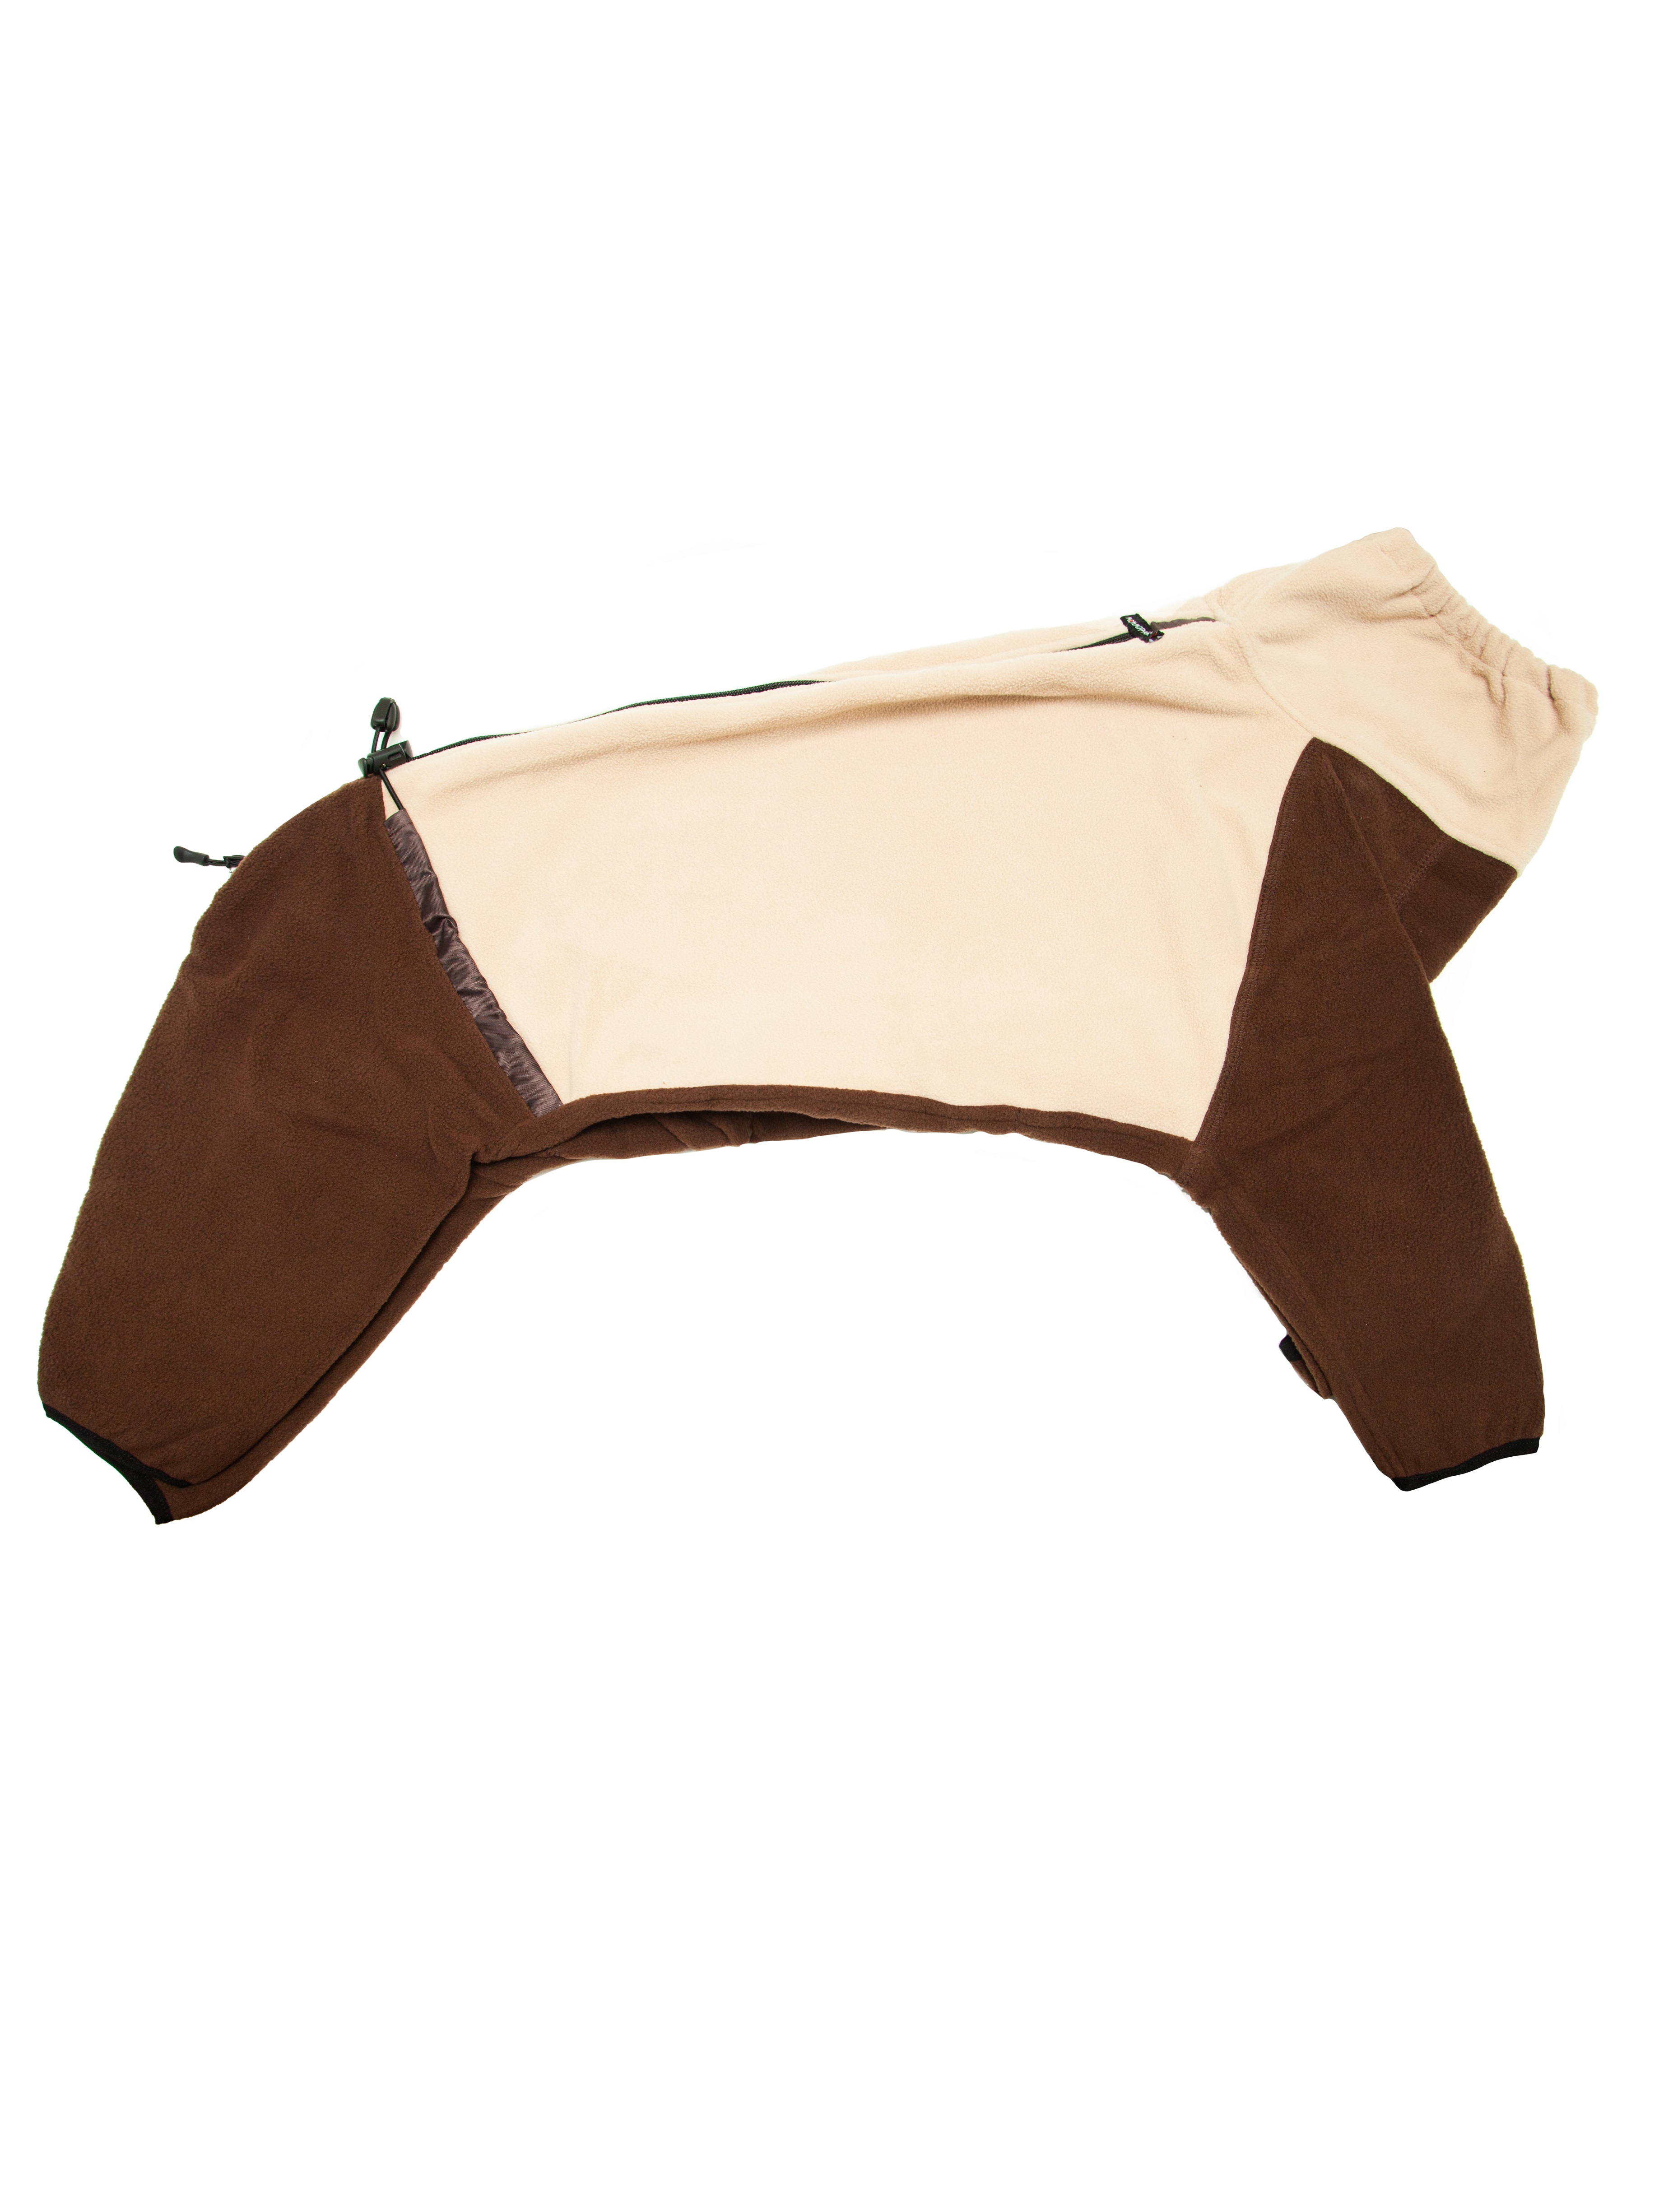 Флисовый комбинезон для собак на молнии, цвет бежево-коричневый, размер S3